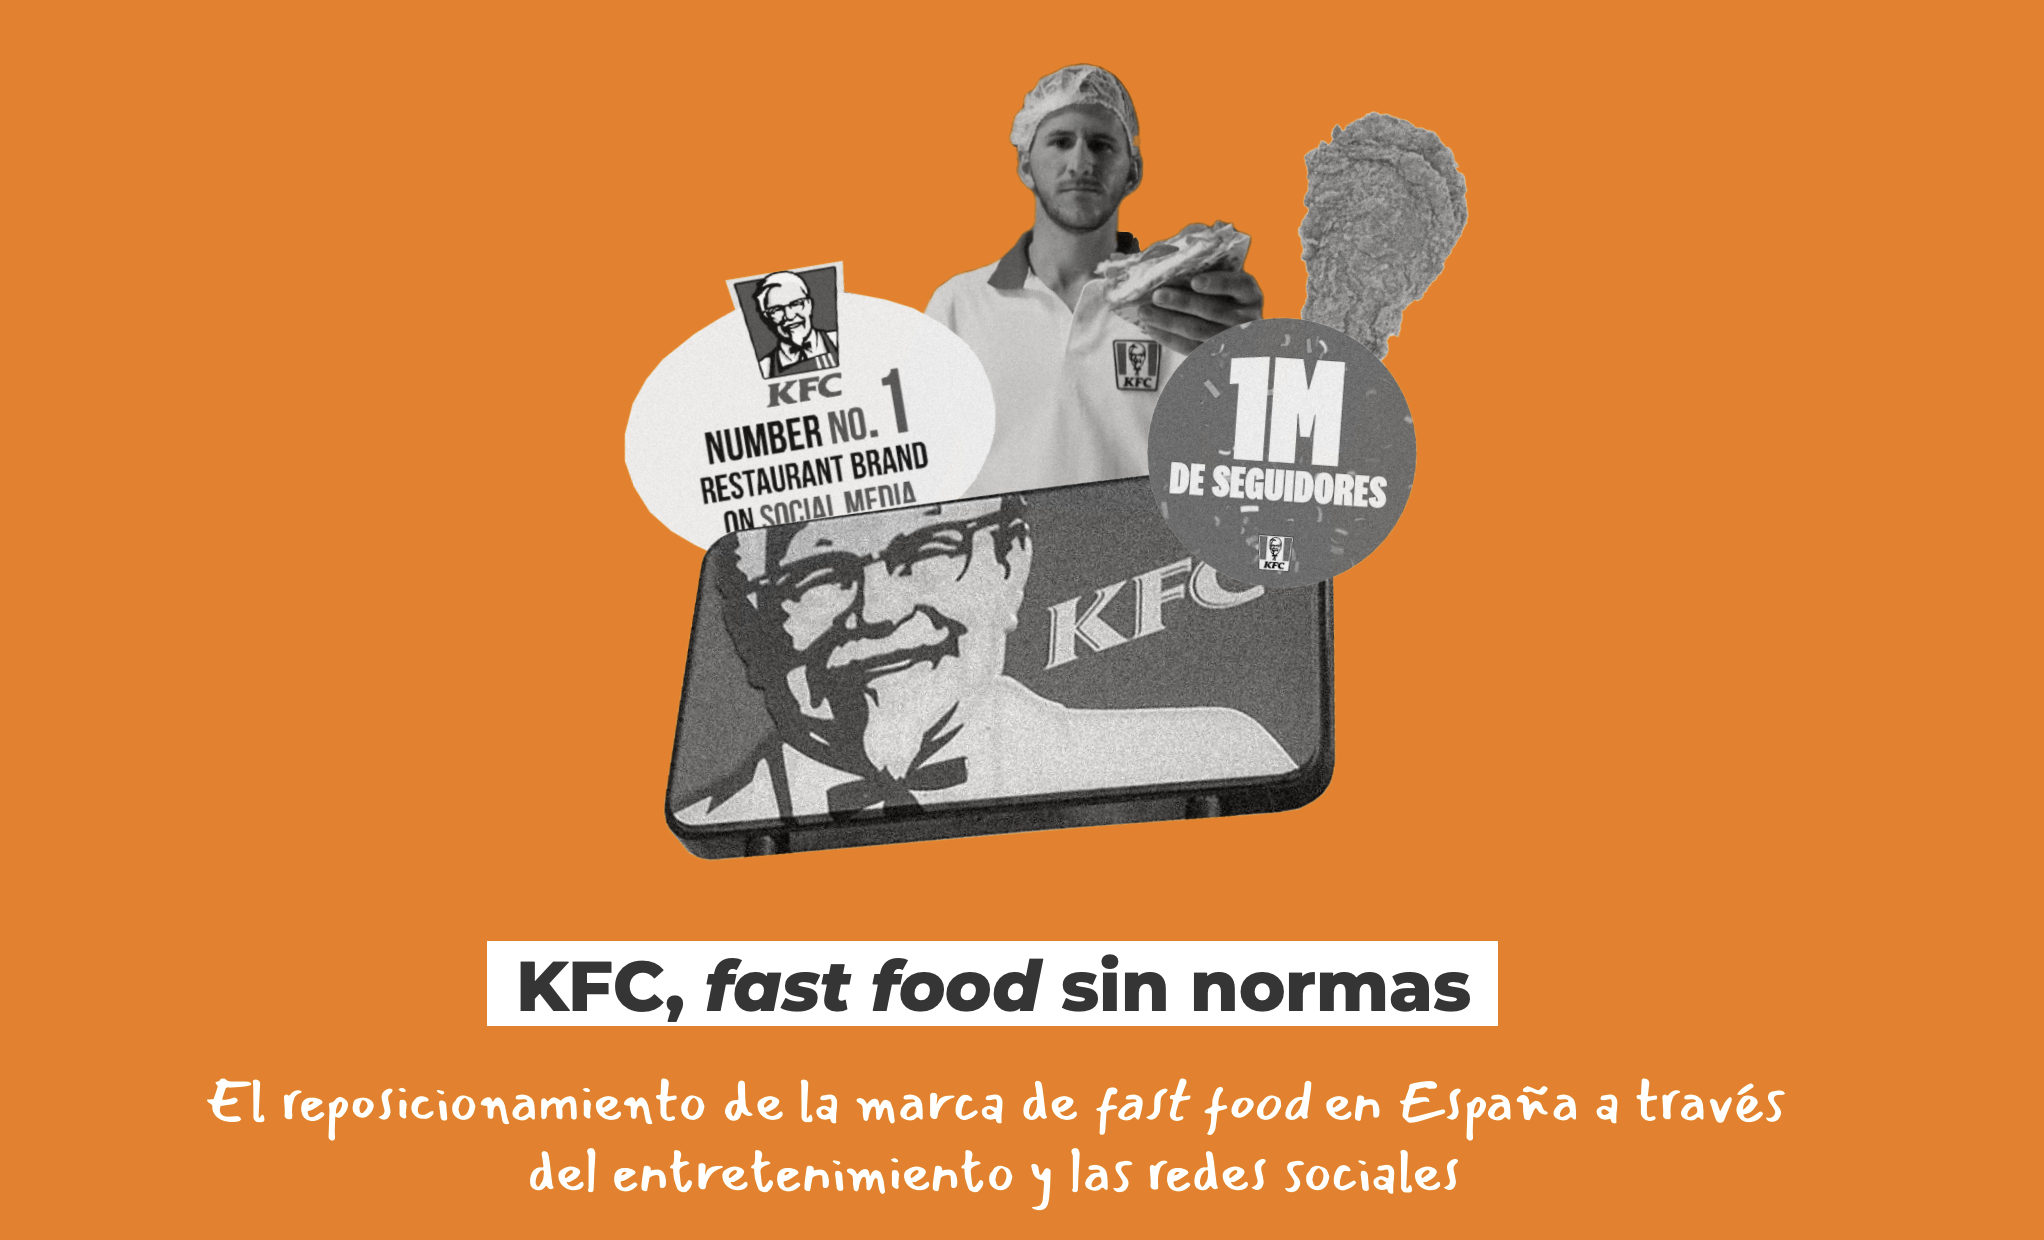 ¿Qué ha hecho KFC en España?